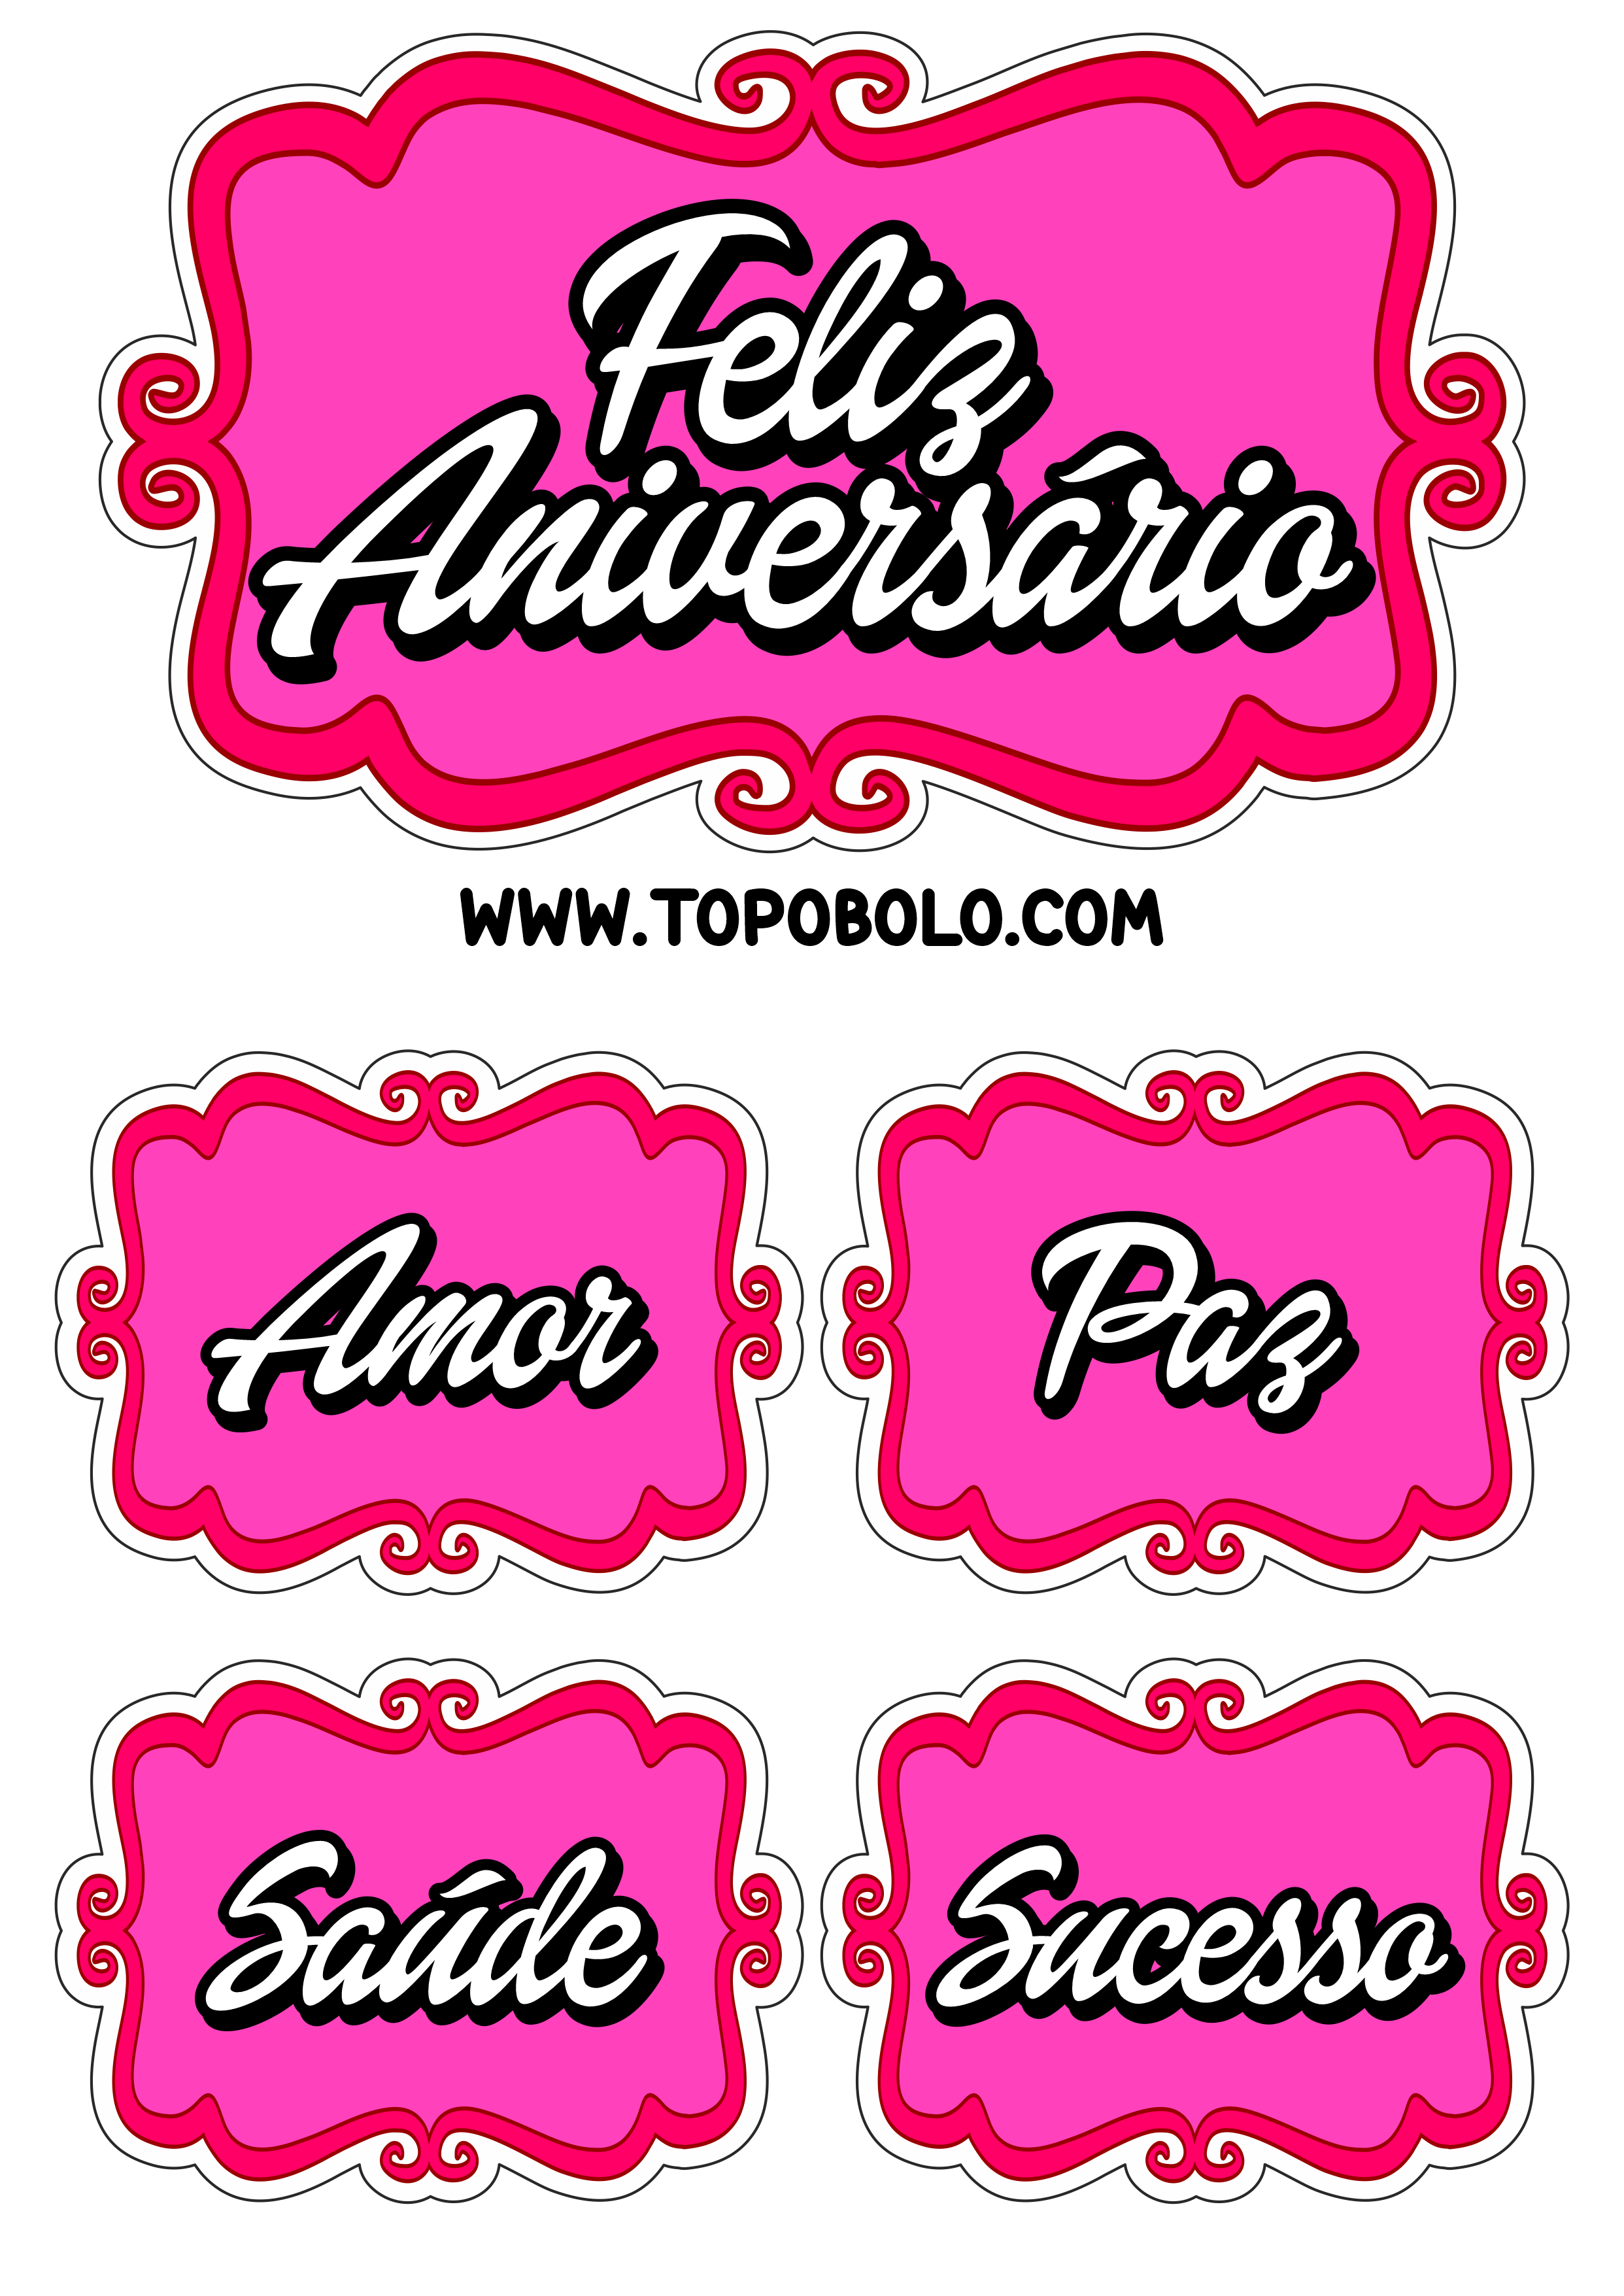 Topo de bolo para imprimir feliz aniversário amor paz saúde e sucesso rosa escuro png